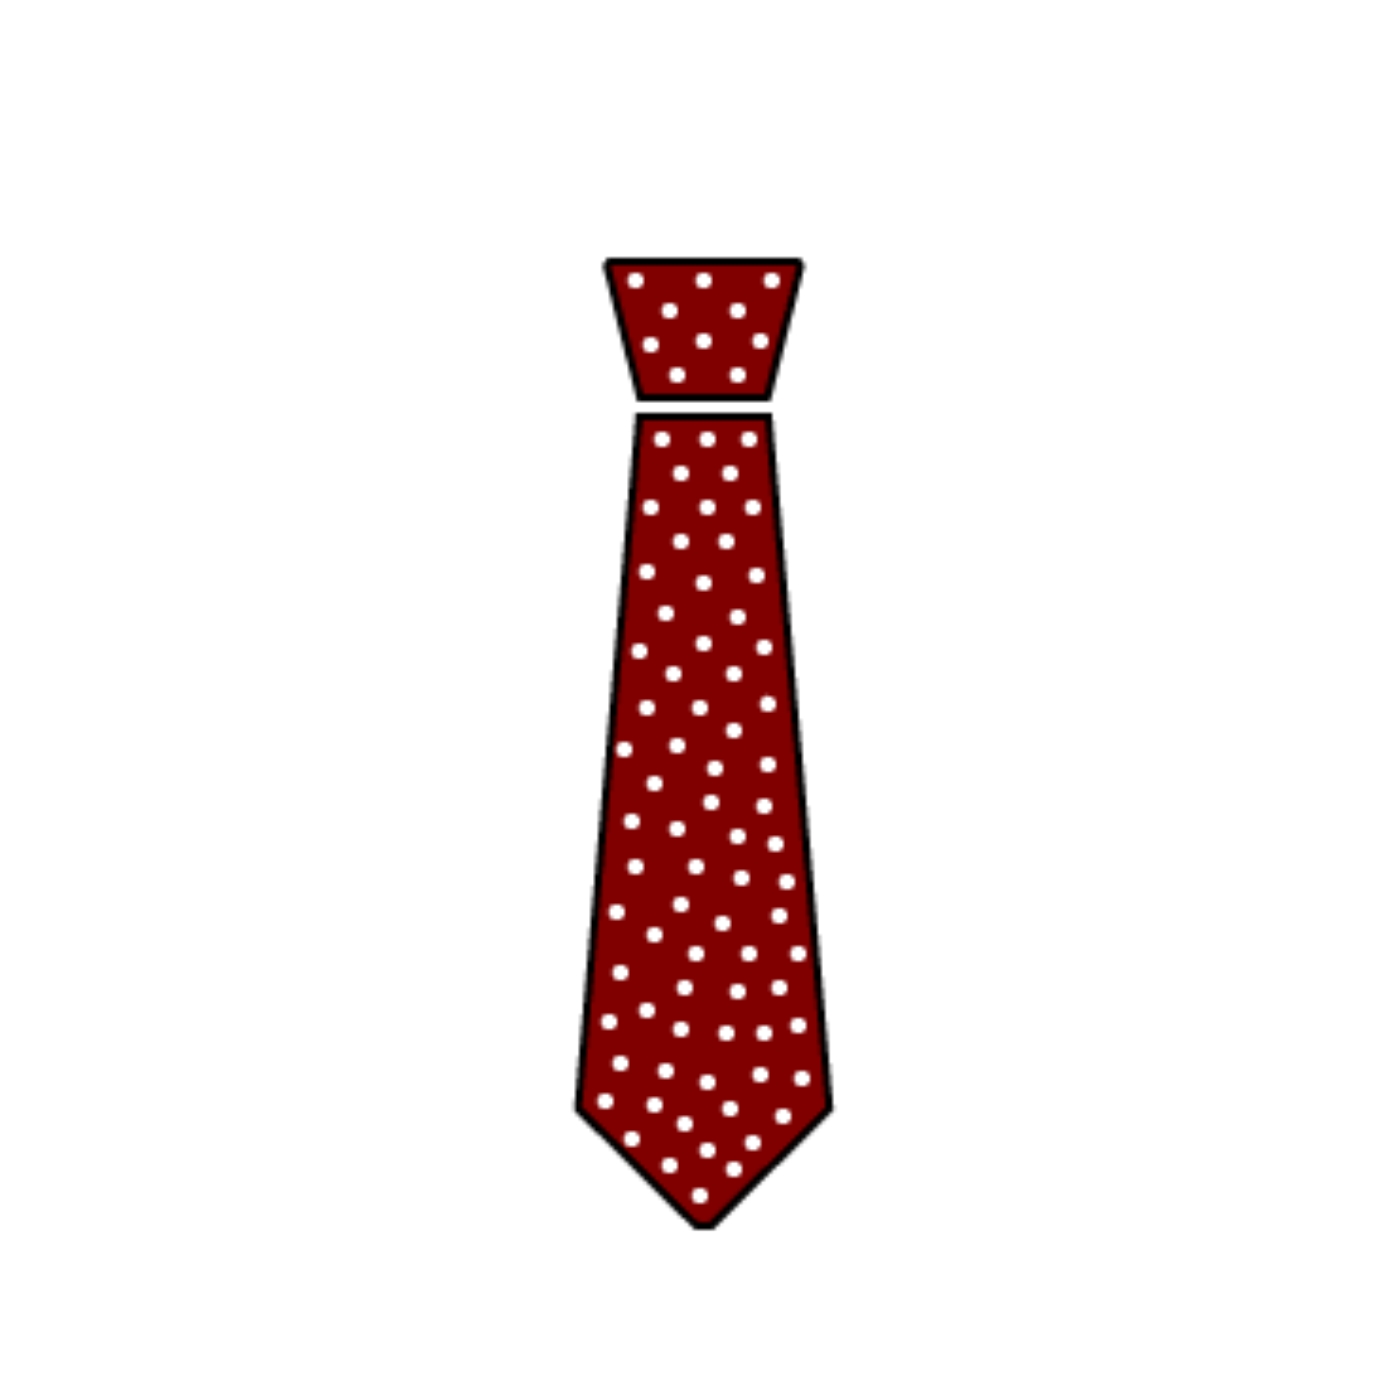 La cravatta rossa - Davide Berti Consulente Finanziario